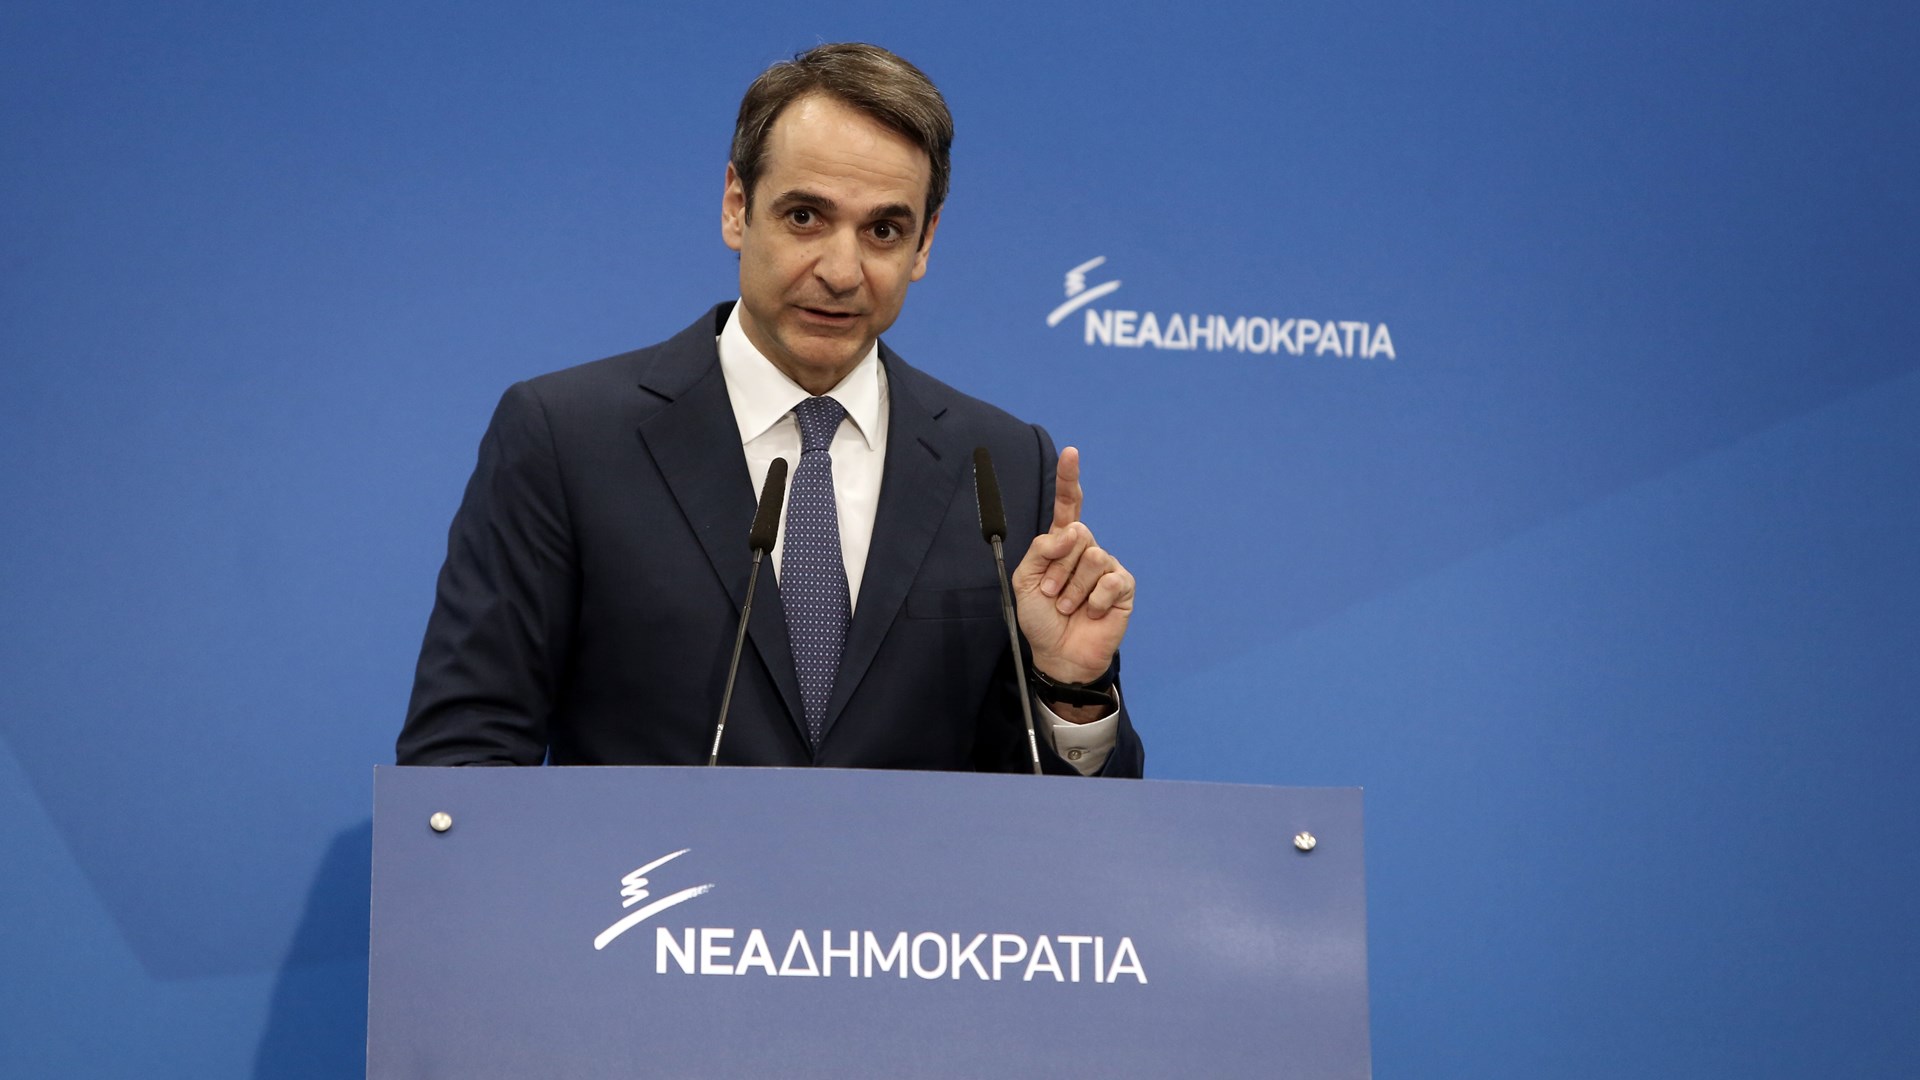 Μητσοτάκης: Δεν θα διχάσουμε τους Έλληνες για να ενώσουμε τους Σκοπιανούς – ΒΙΝΤΕΟ